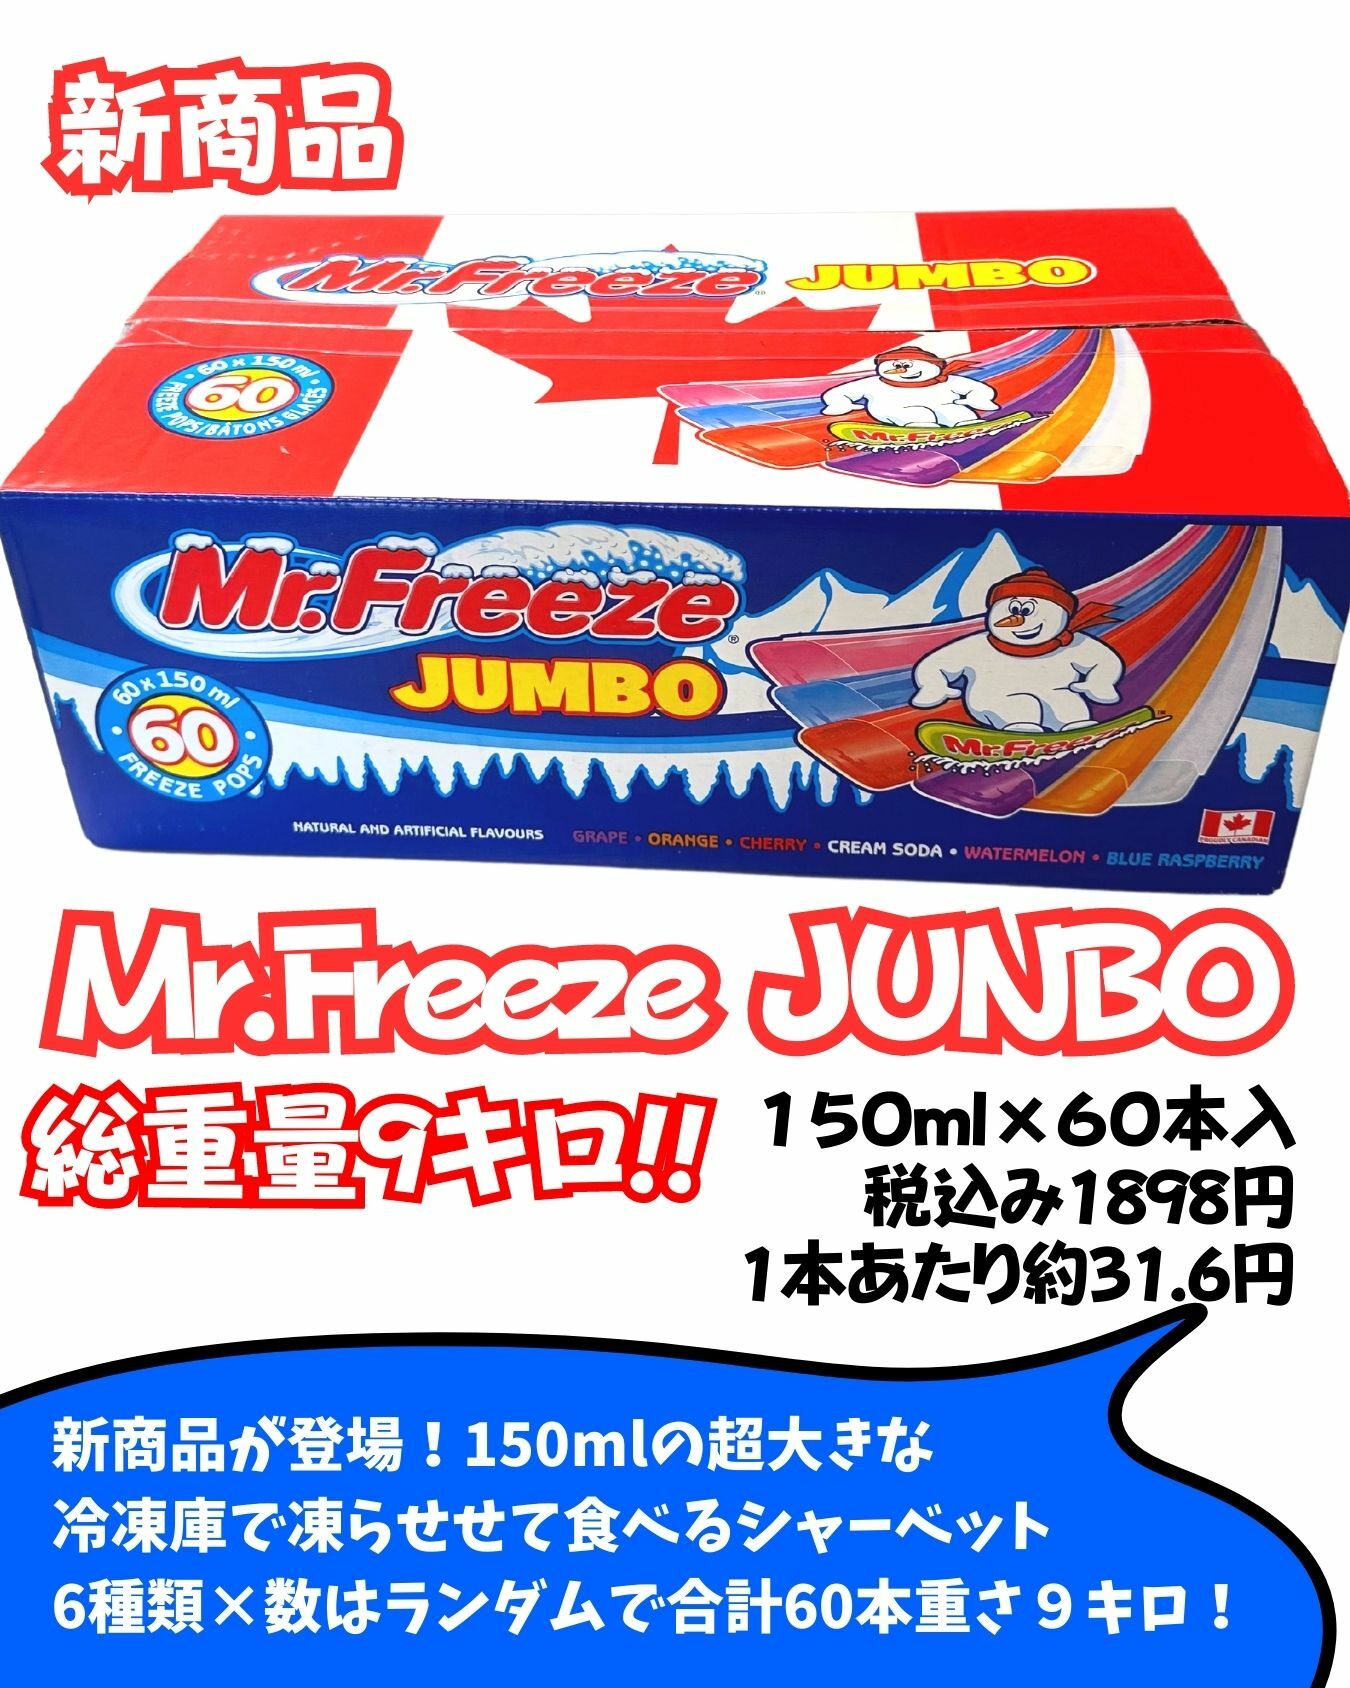 【コストコ】新商品ミスターフリーズ ジャンボ アイスキャンディーの素